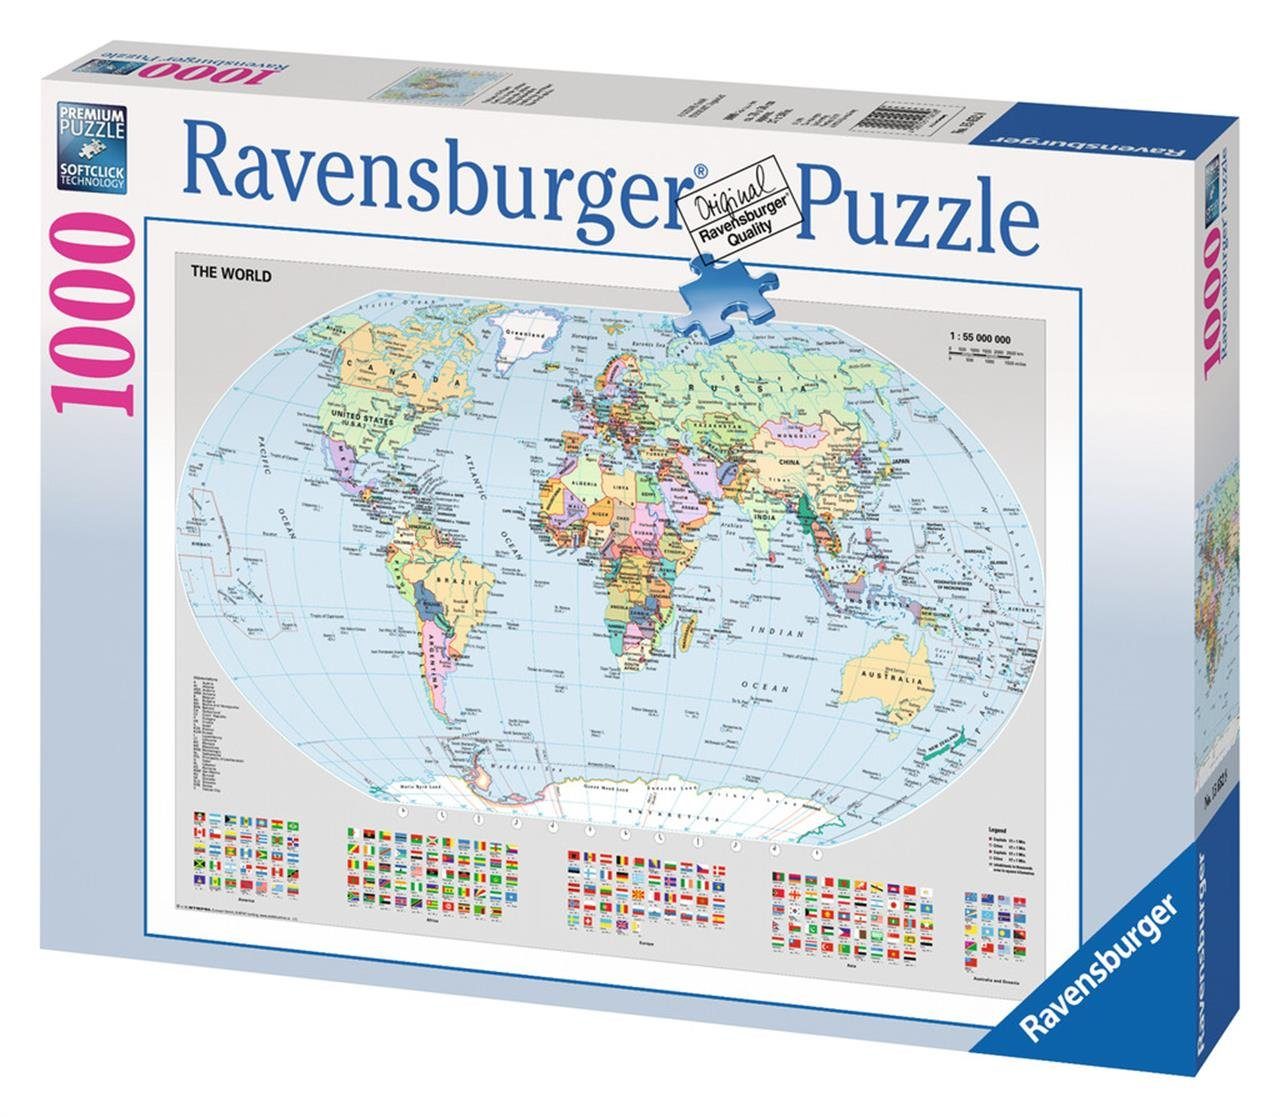 Ravensburger Puzzle Pz. Politische Weltkarte 1000Teile, Puzzleteile